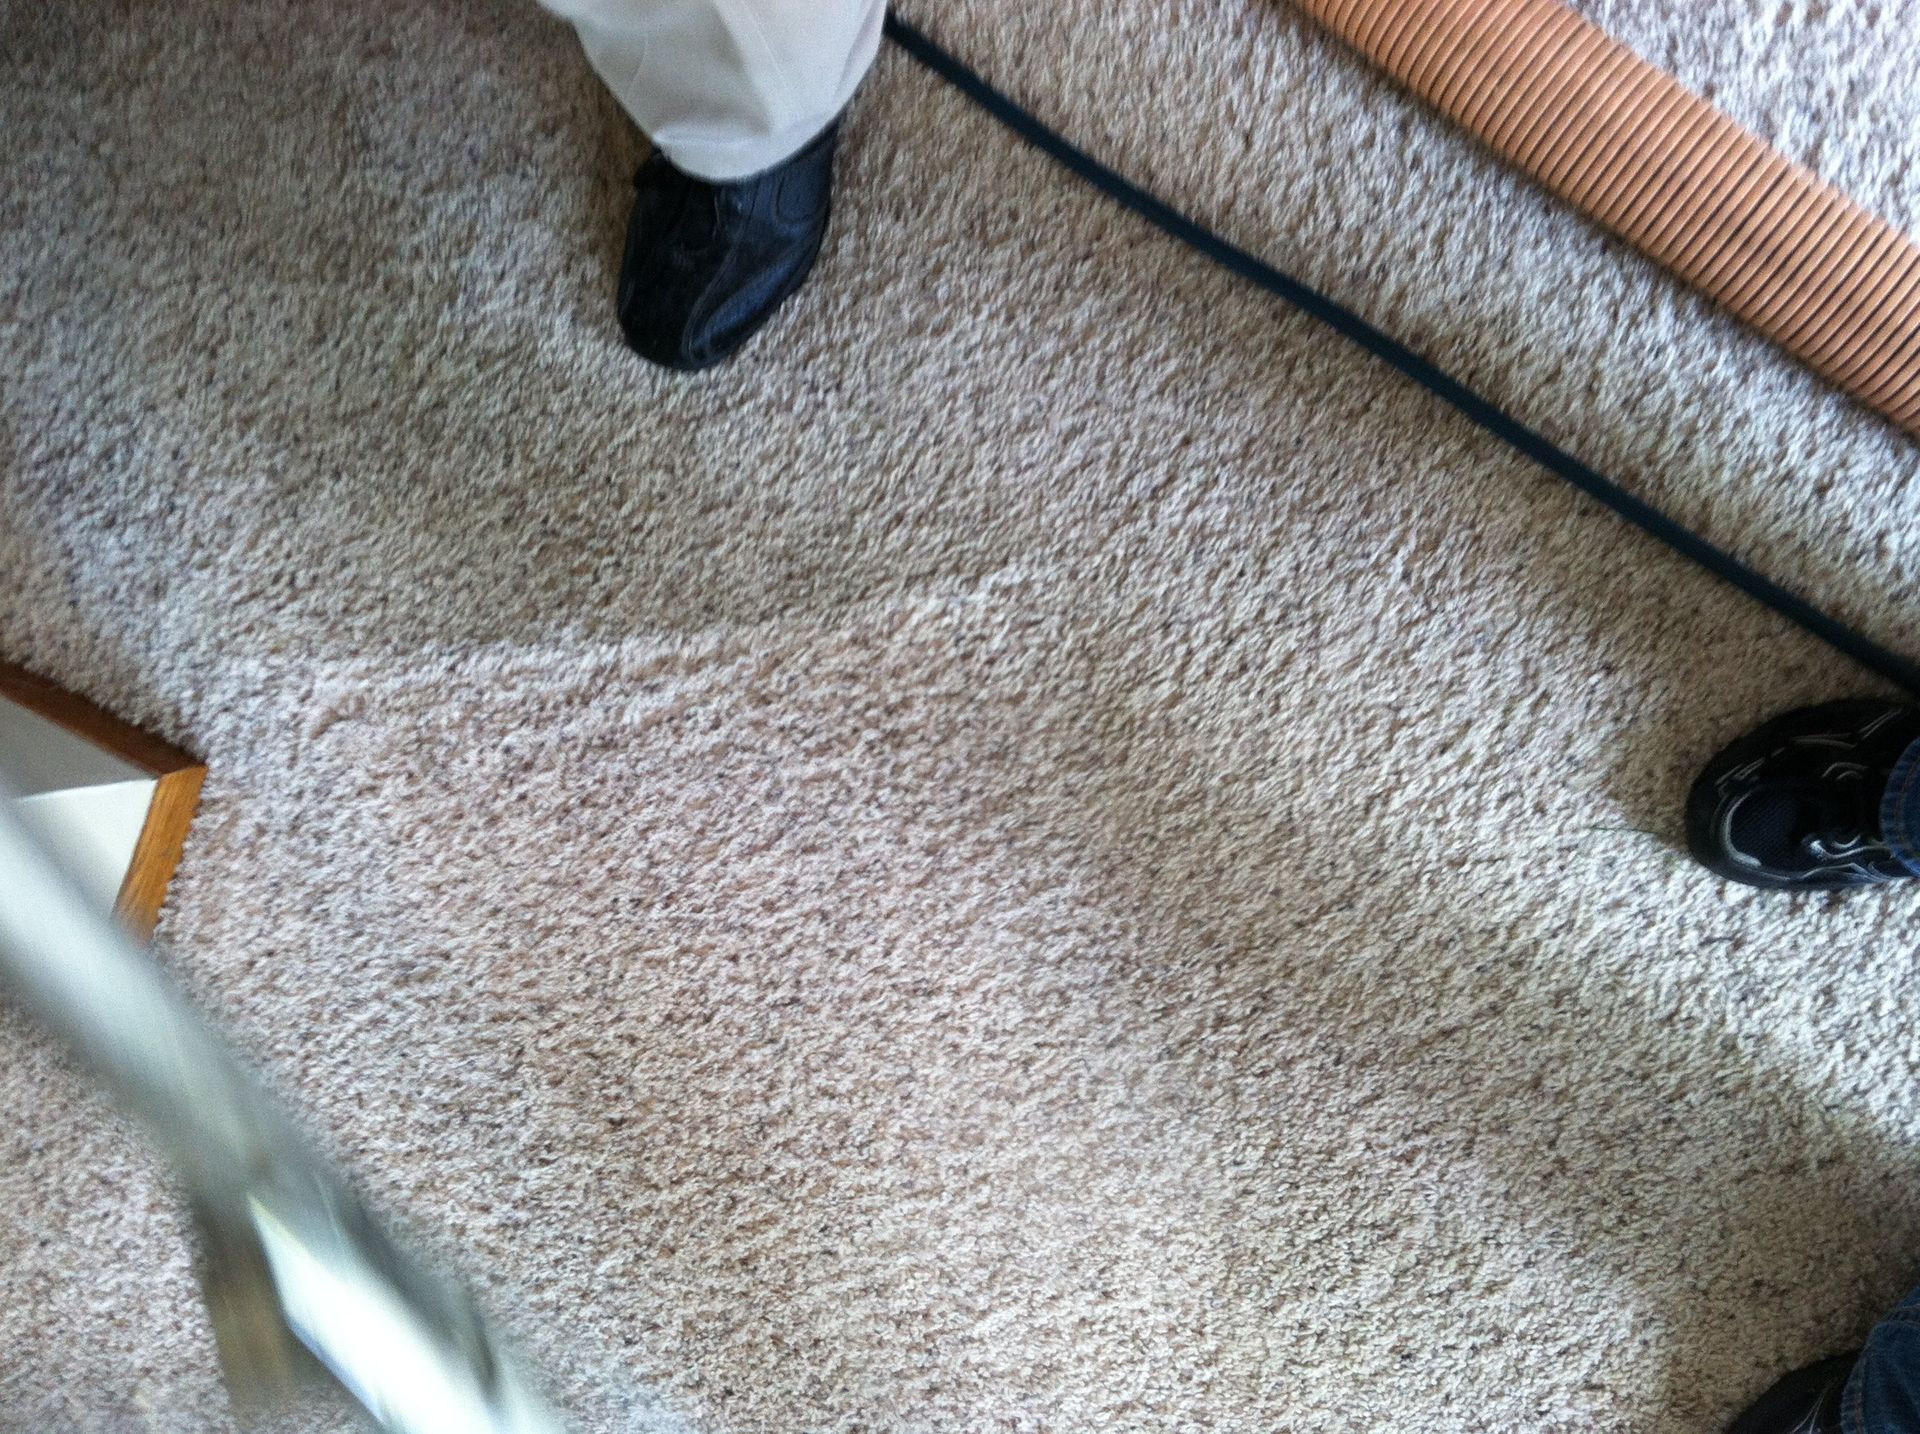 Clean carpeting